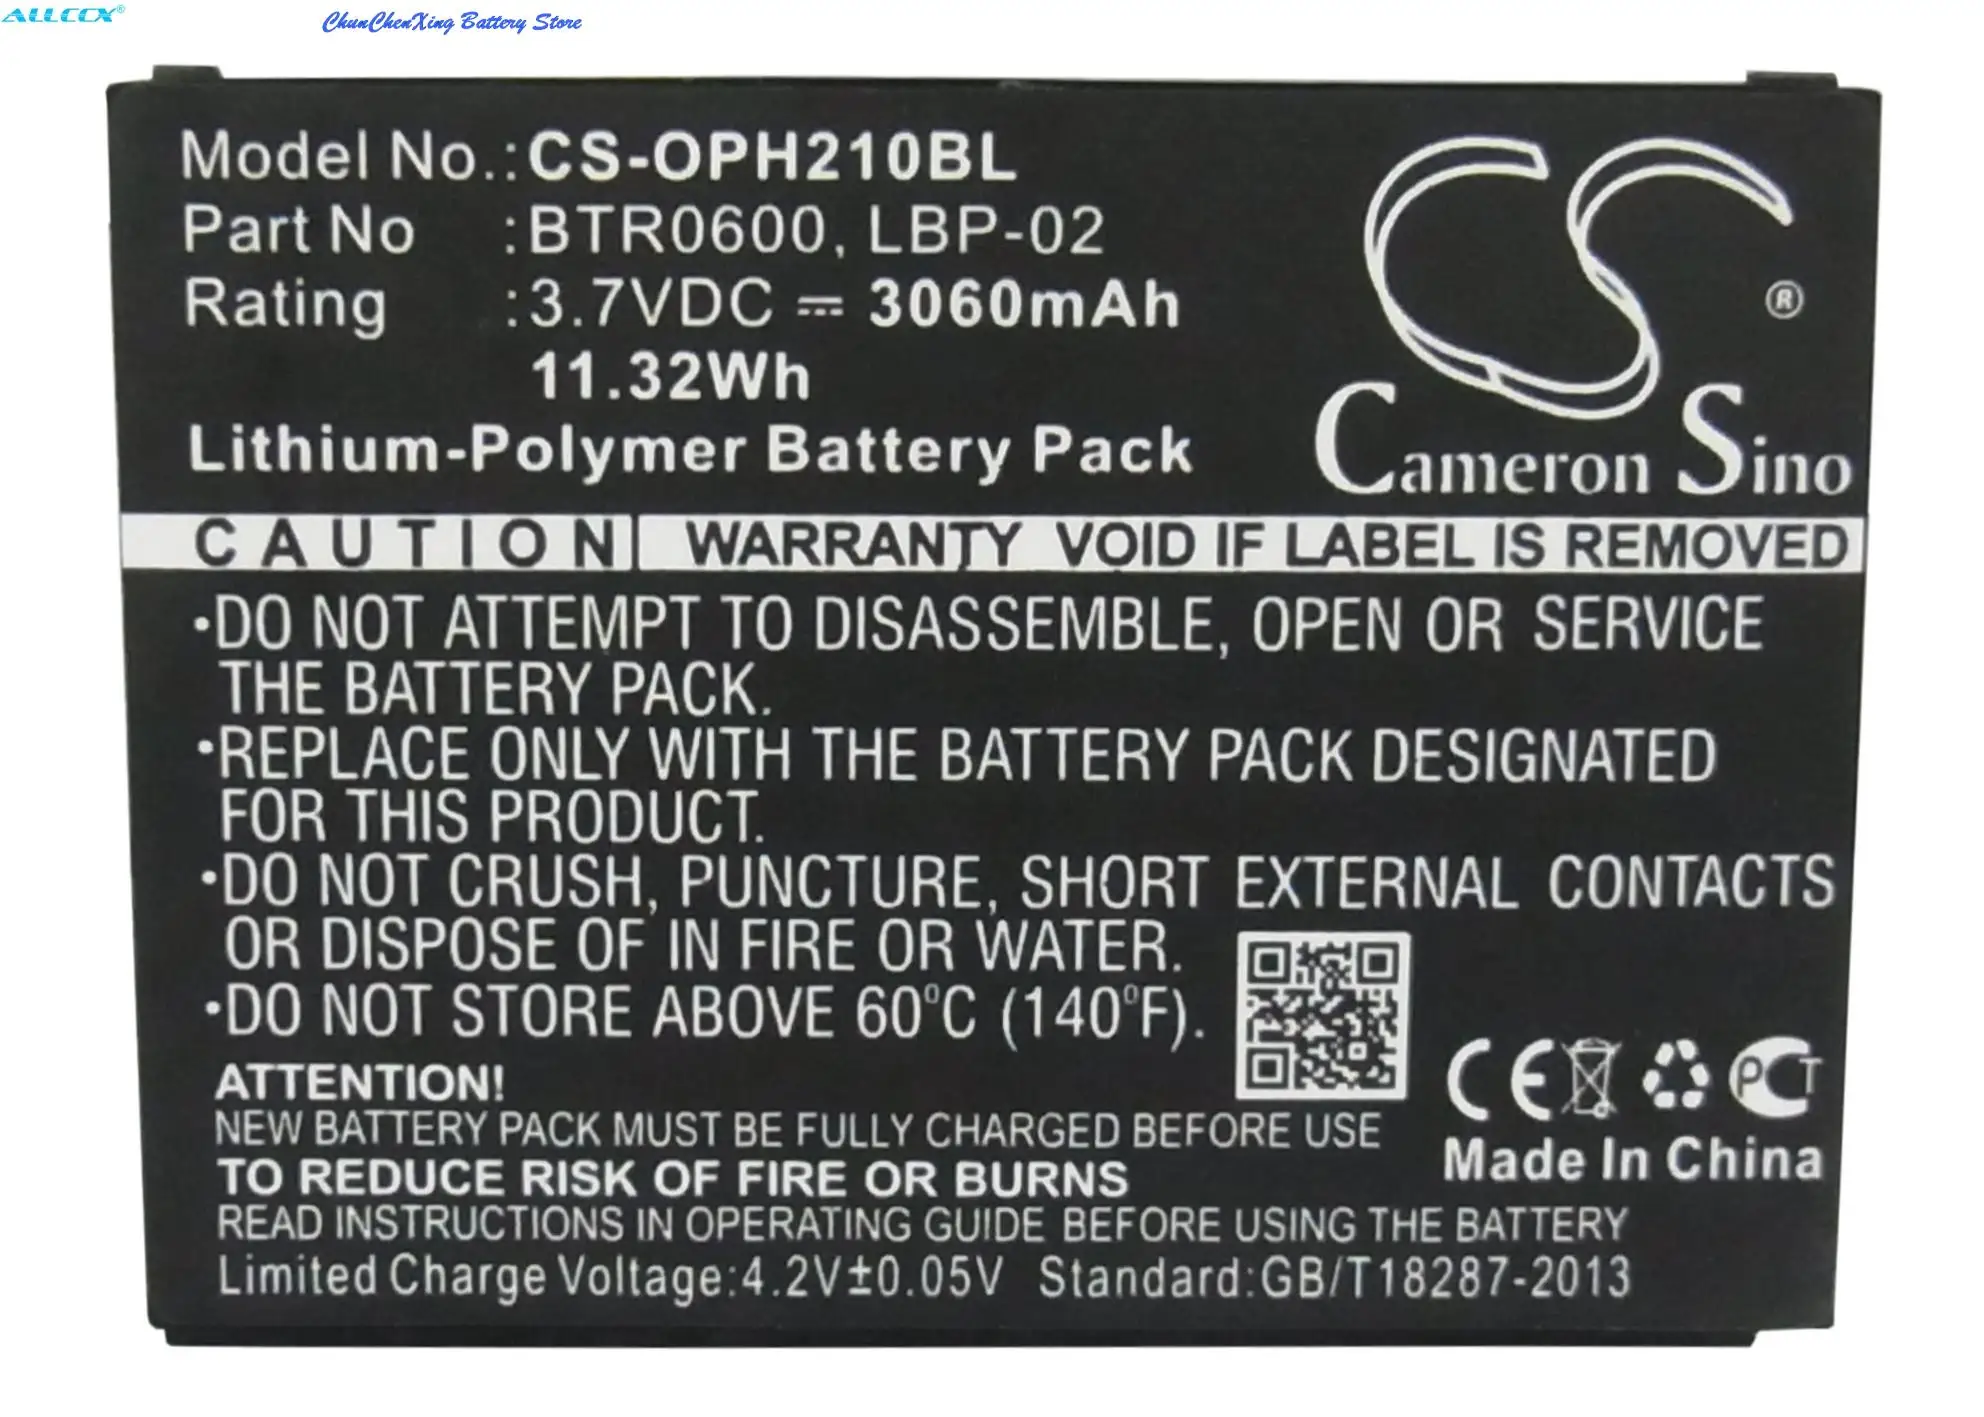 

Cameron Sino 3060mAh Battery for Opticon H21, H21 1D, H21 2D, H22, H22 1D alpha, H22 1D qwerty, H22 2D, H-25, H-25 1D, H-25 2D